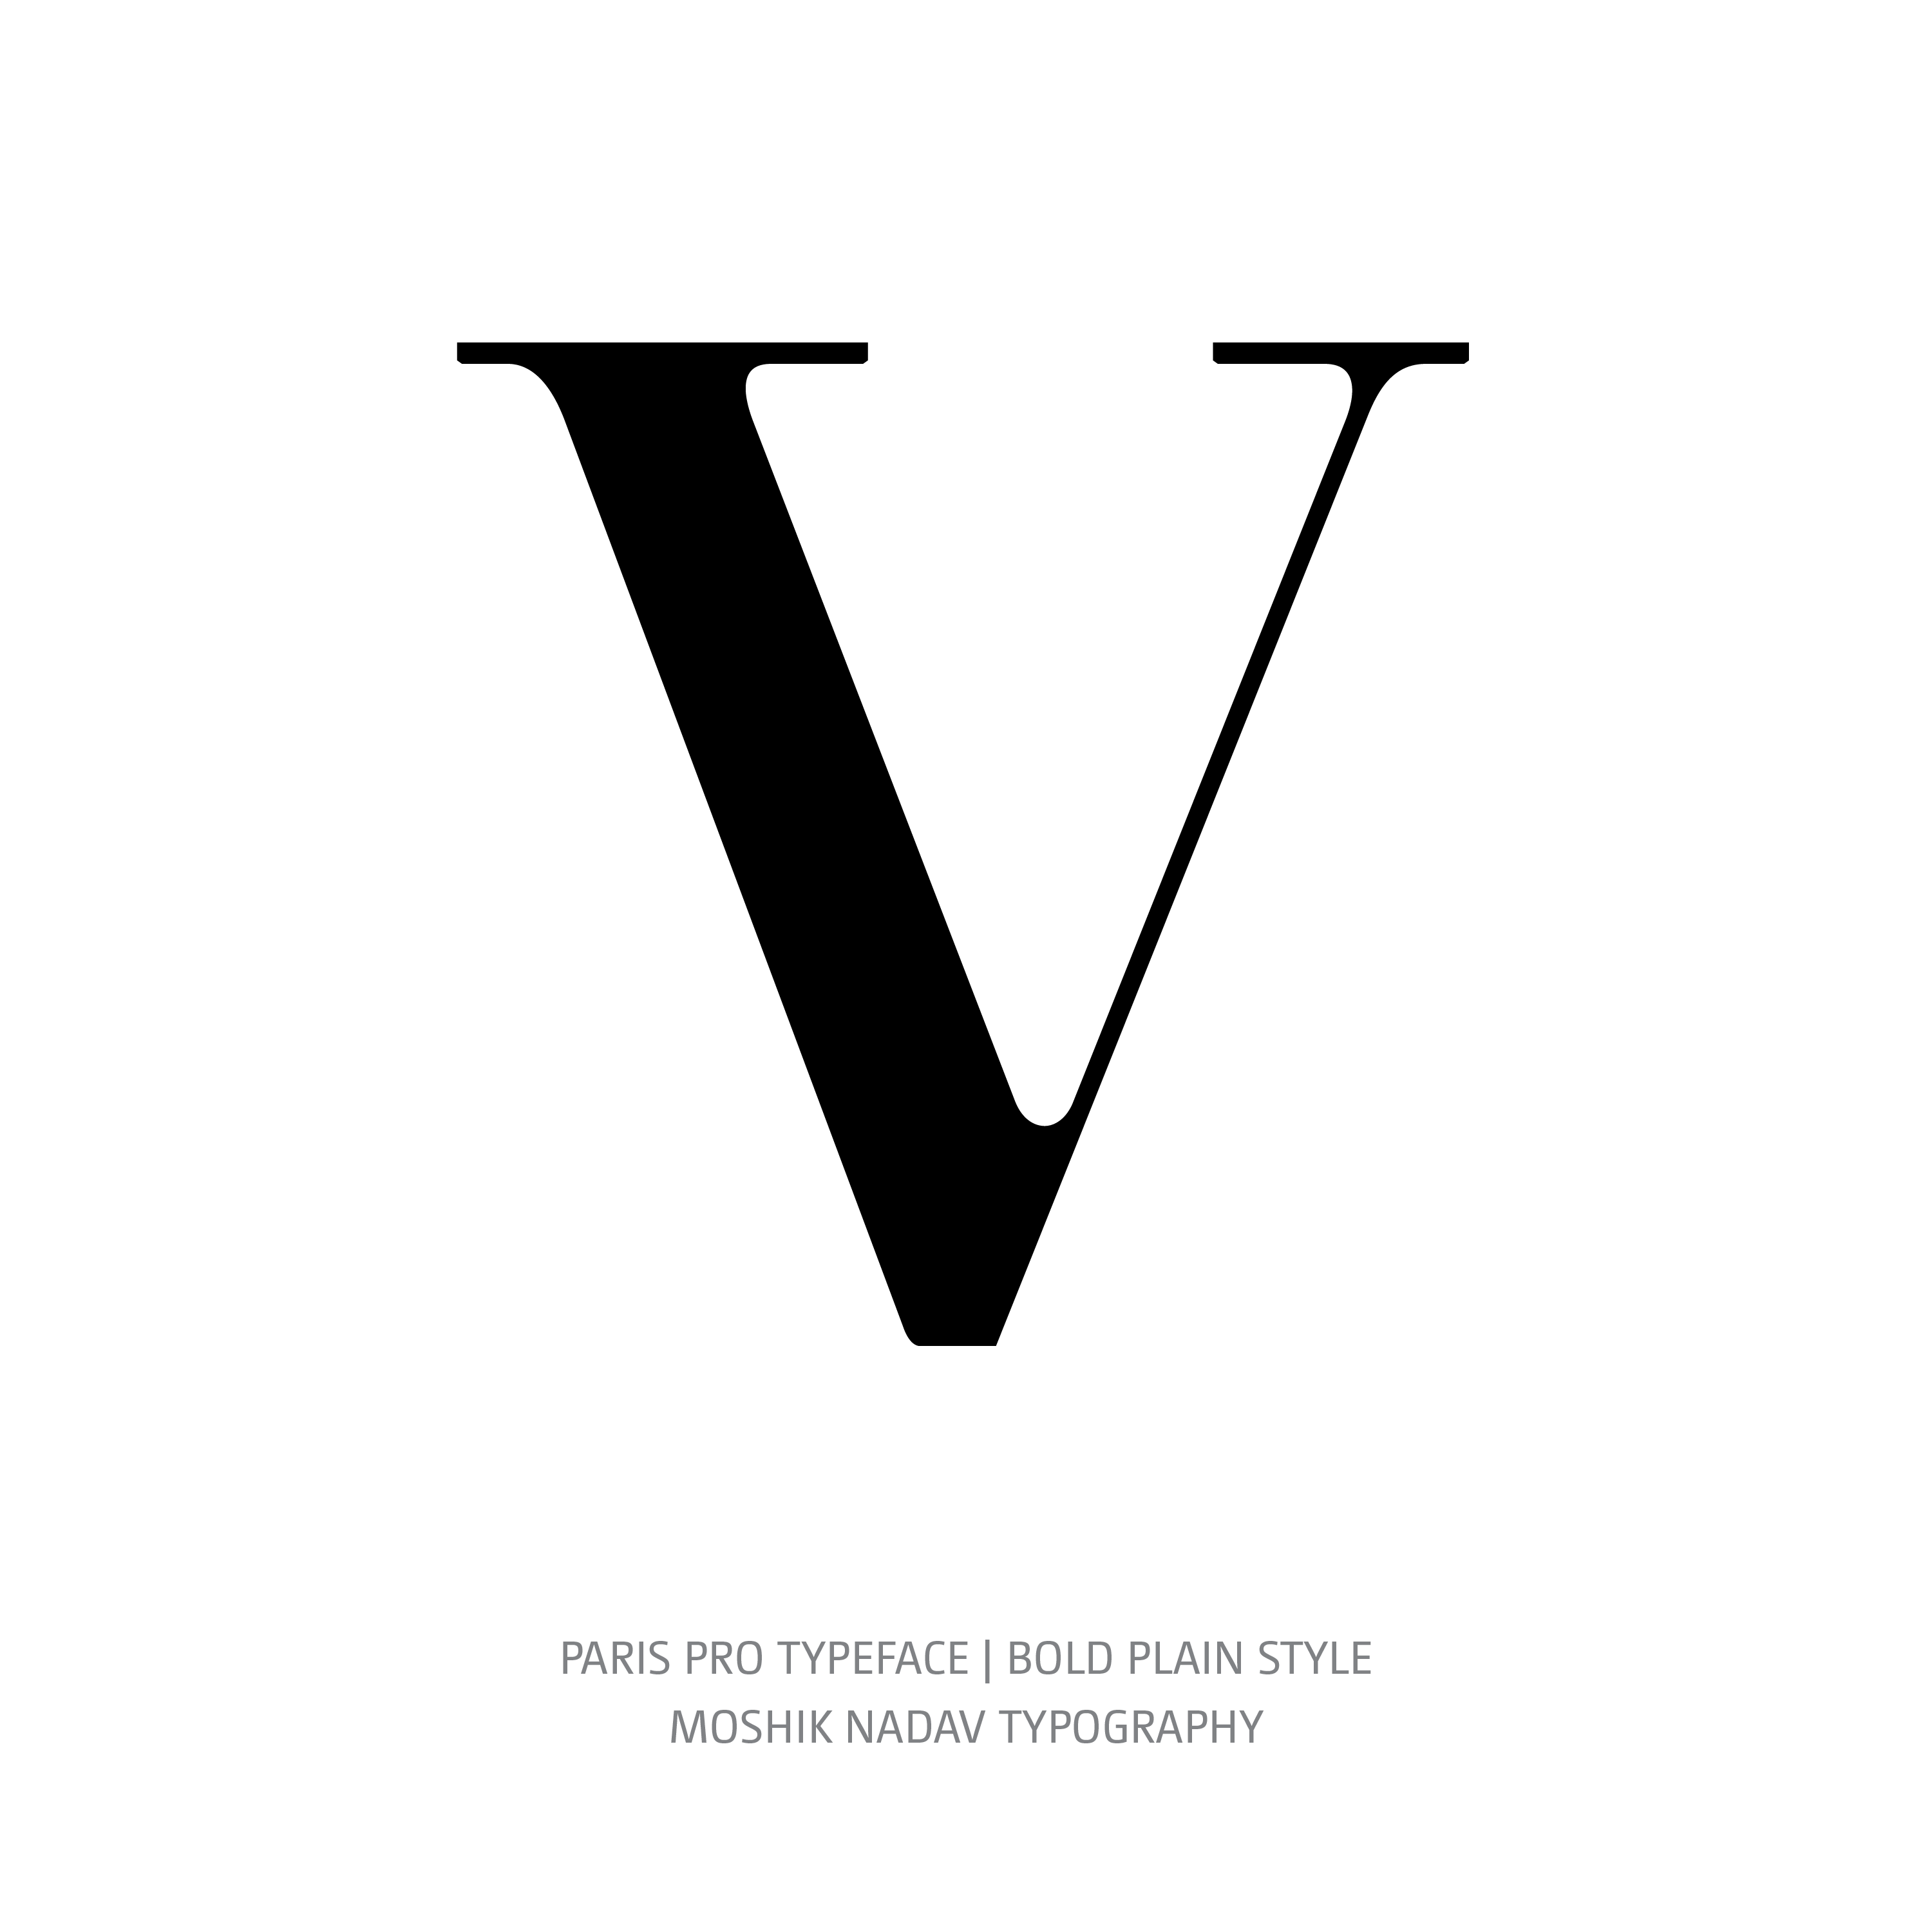 Paris Pro Typeface Bold Plain V